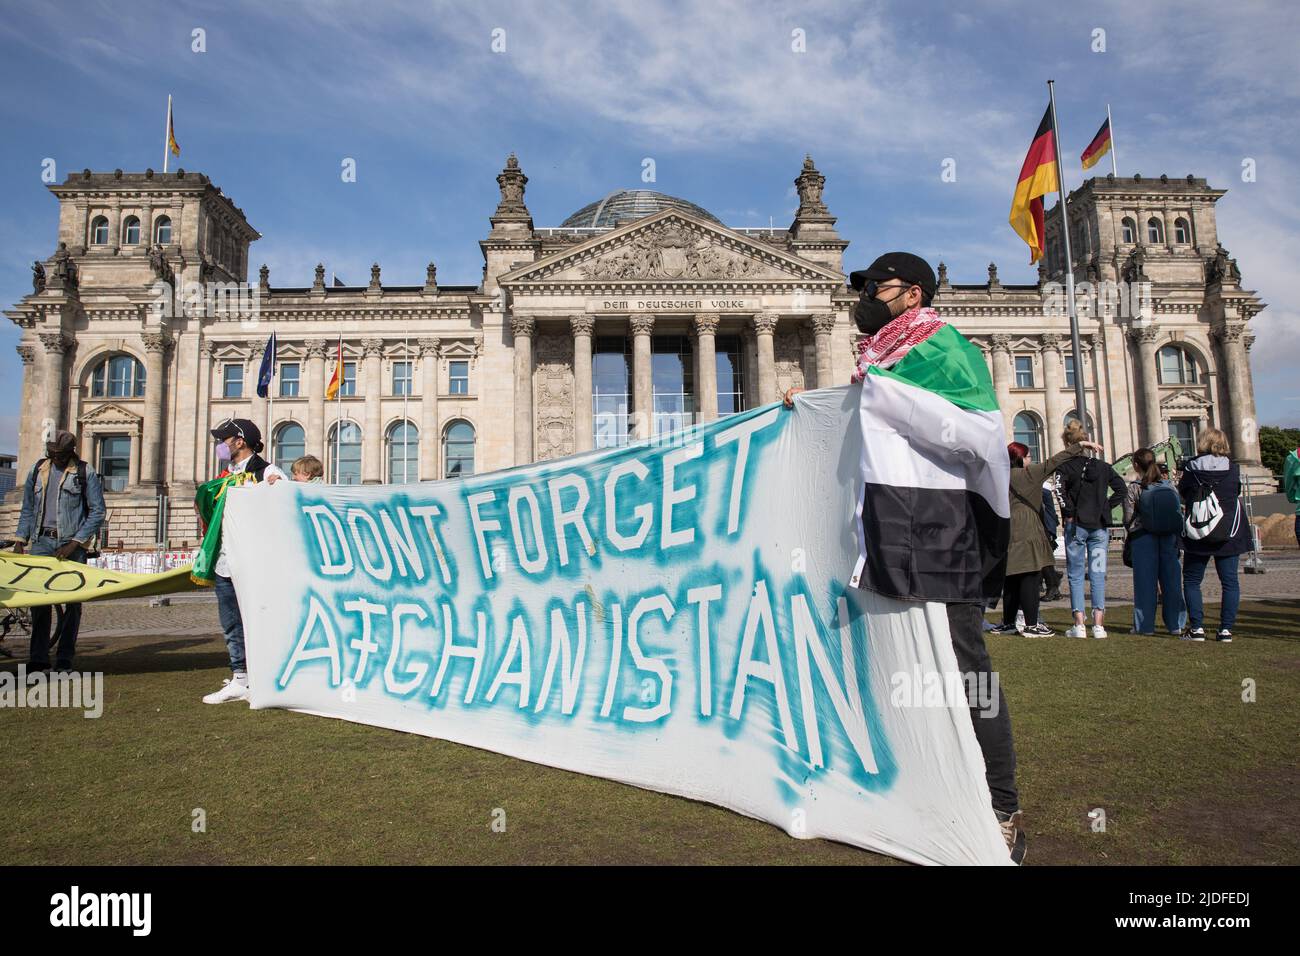 Berlino, Germania. 20th giugno 2022. Rally di fronte al Bundestag, il parlamento federale tedesco, il 20 giugno 2022. I manifestanti chiedevano che la Convenzione di Ginevra sui rifugiati fosse a disposizione di tutti. Hanno affermato che i rifugiati non sono trattati allo stesso modo in Germania, quindi da altri paesi i rifugiati ricevono più attenzione dei rifugiati provenienti da diverse parti del mondo. I manifestanti chiedono inoltre che i rifugiati abbiano bisogno del libero accesso ai permessi di lavoro e all’istruzione. (Credit Image: © Michael Kuenne/PRESSCOV via ZUMA Press Wire) Foto Stock